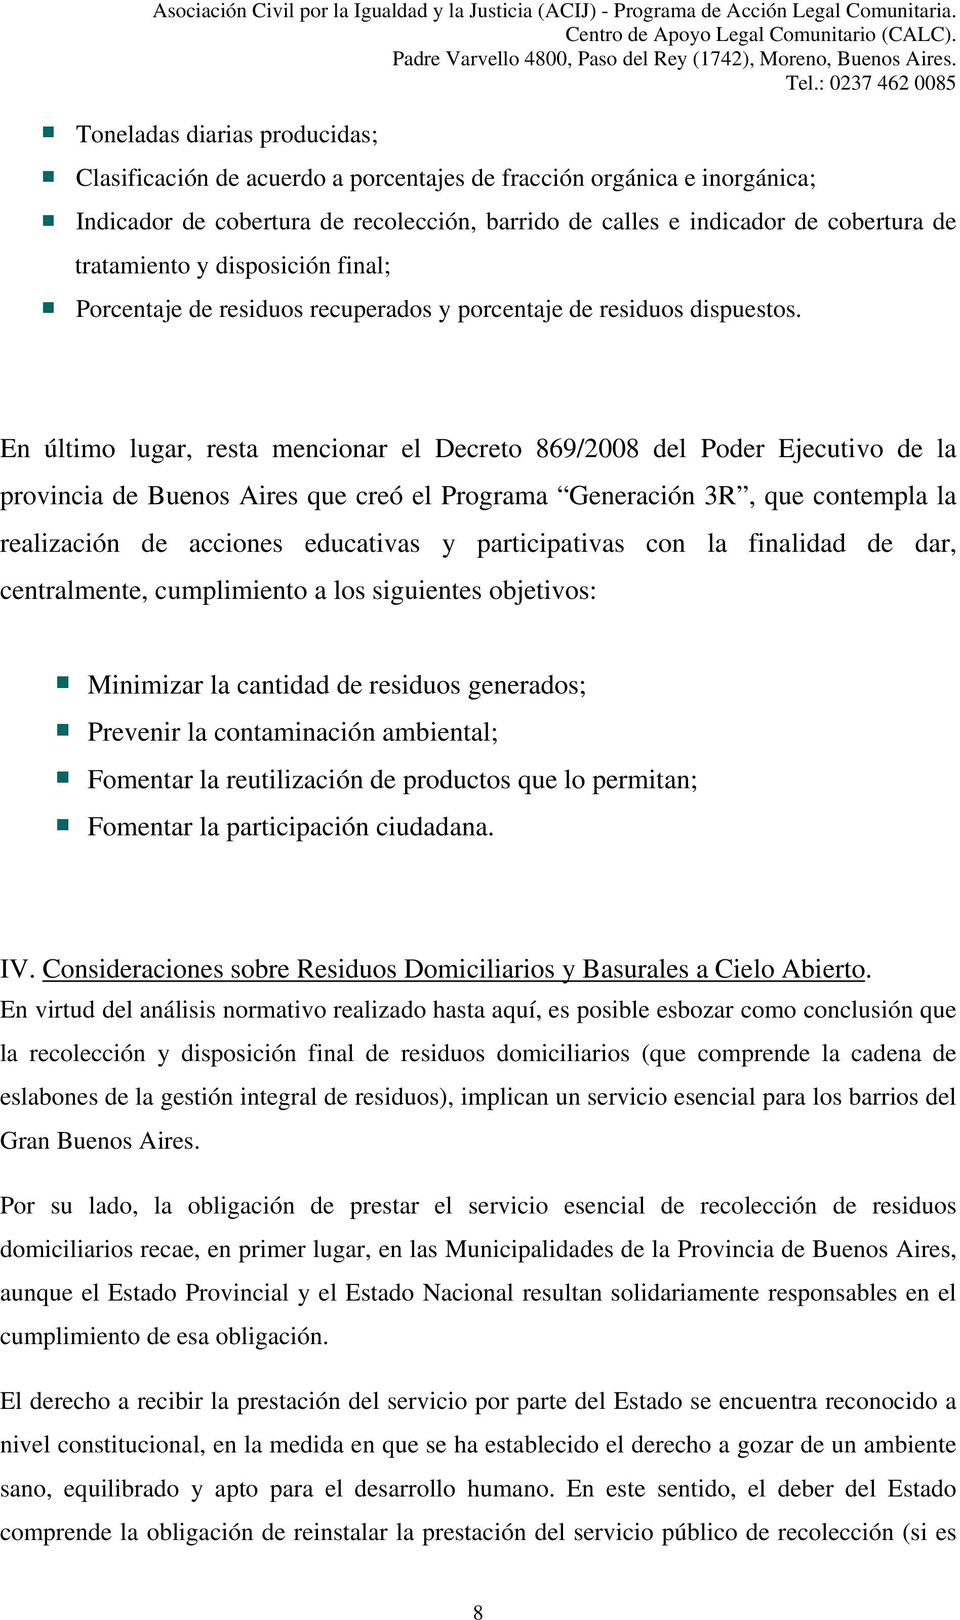 En último lugar, resta mencionar el Decreto 869/2008 del Poder Ejecutivo de la provincia de Buenos Aires que creó el Programa Generación 3R, que contempla la realización de acciones educativas y